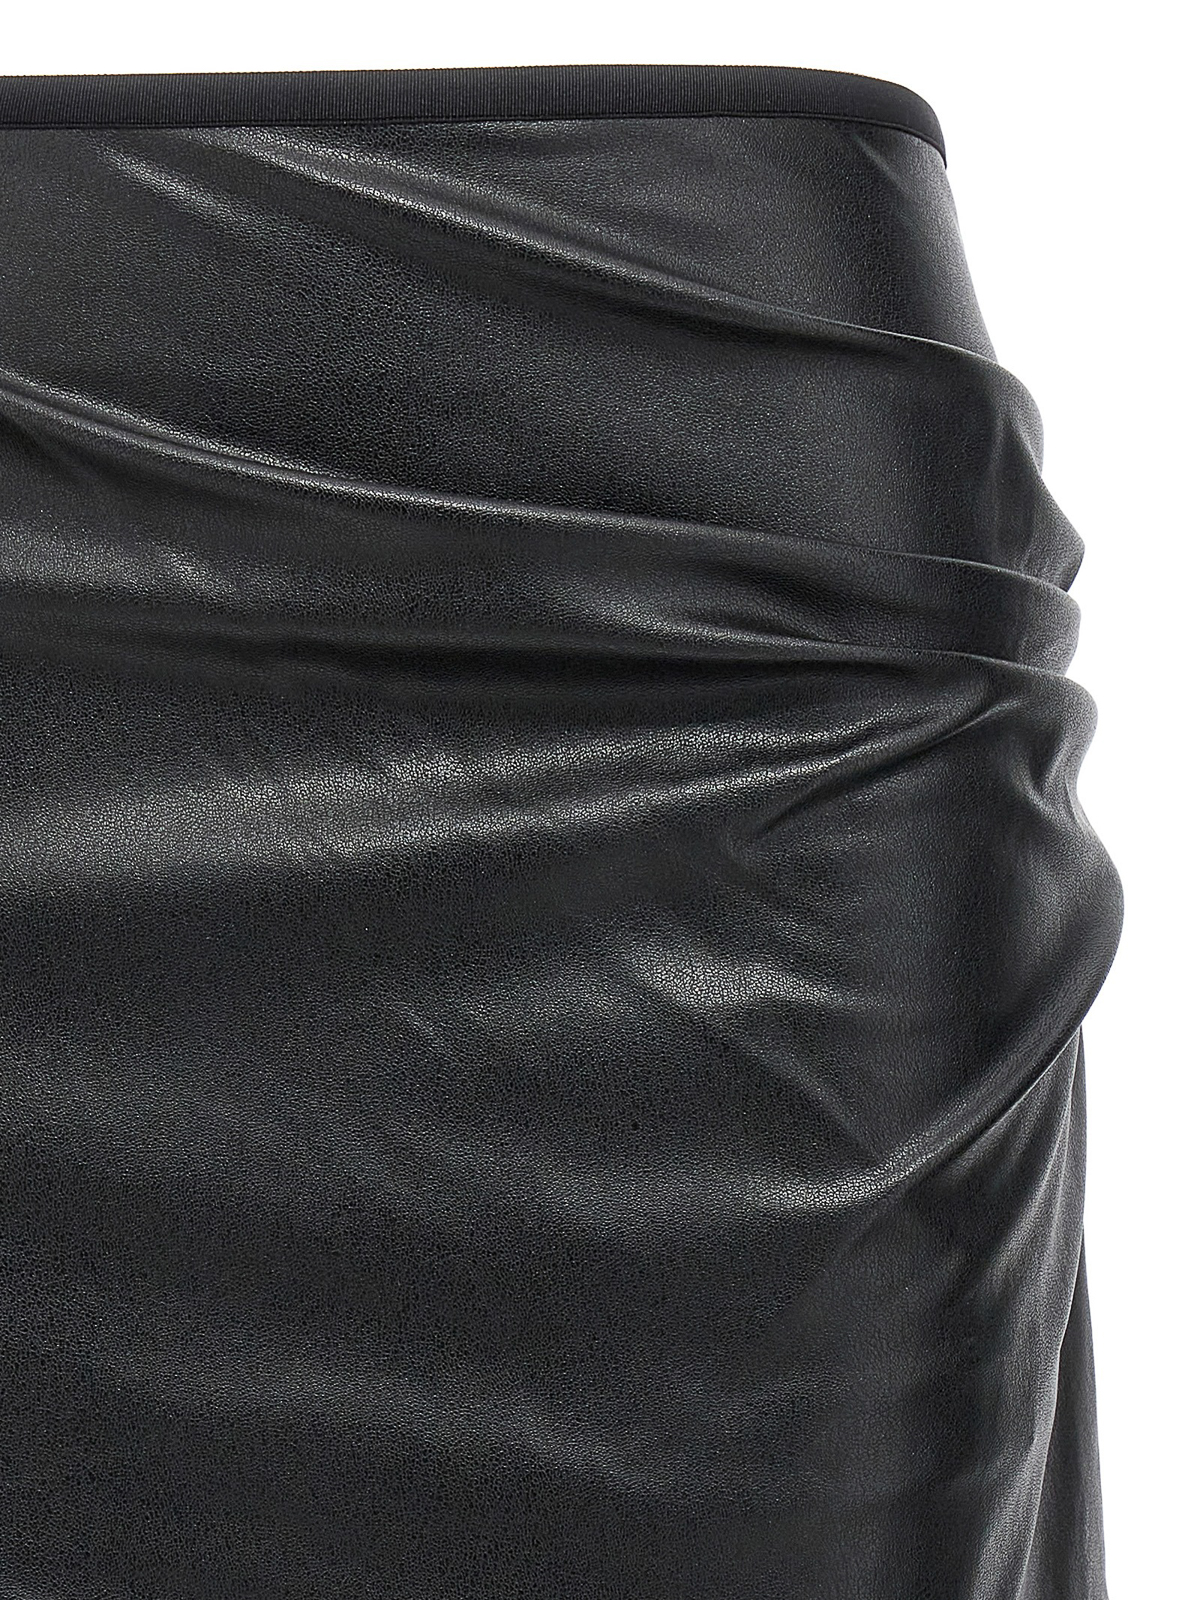 Helmut Lang Croc Embossed Leather Vest - Black